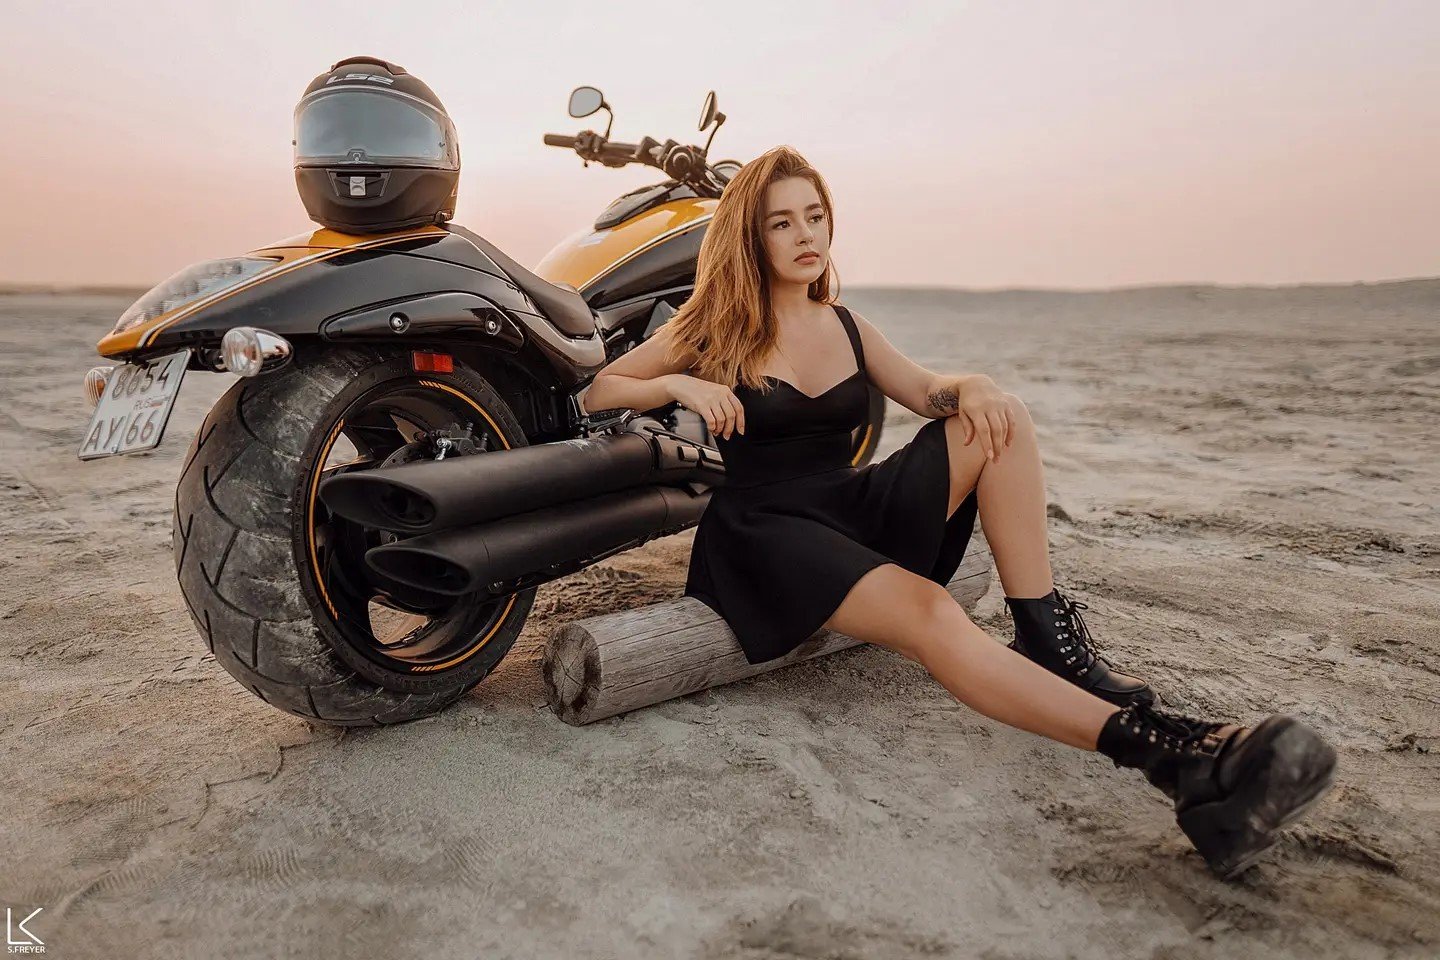 Fotos de Mulheres e Motos - Modelo de vestido preto com moto no deserto by Freyer